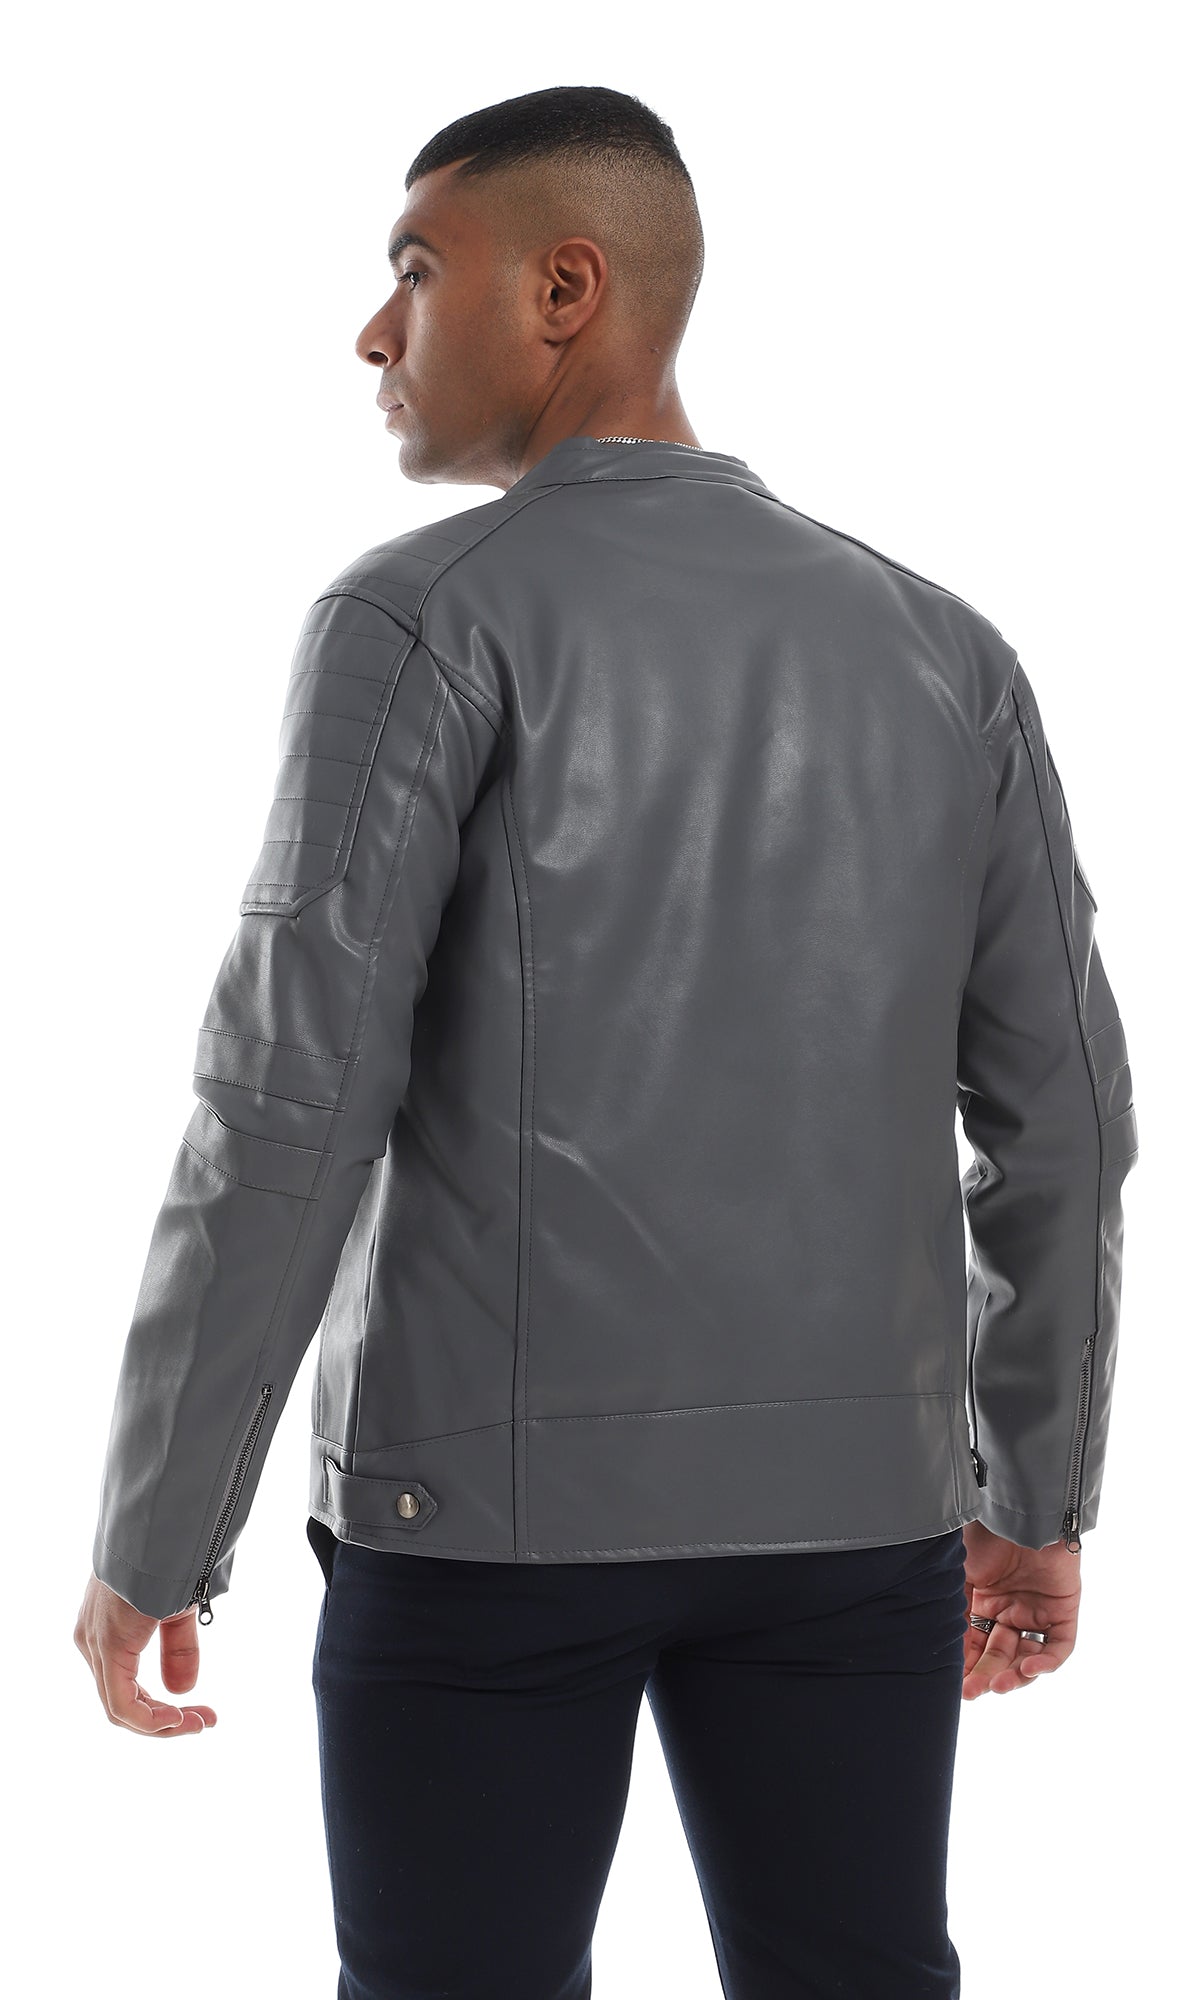 O156164 Stitched Details Internal Fur Grey Leather Jacket